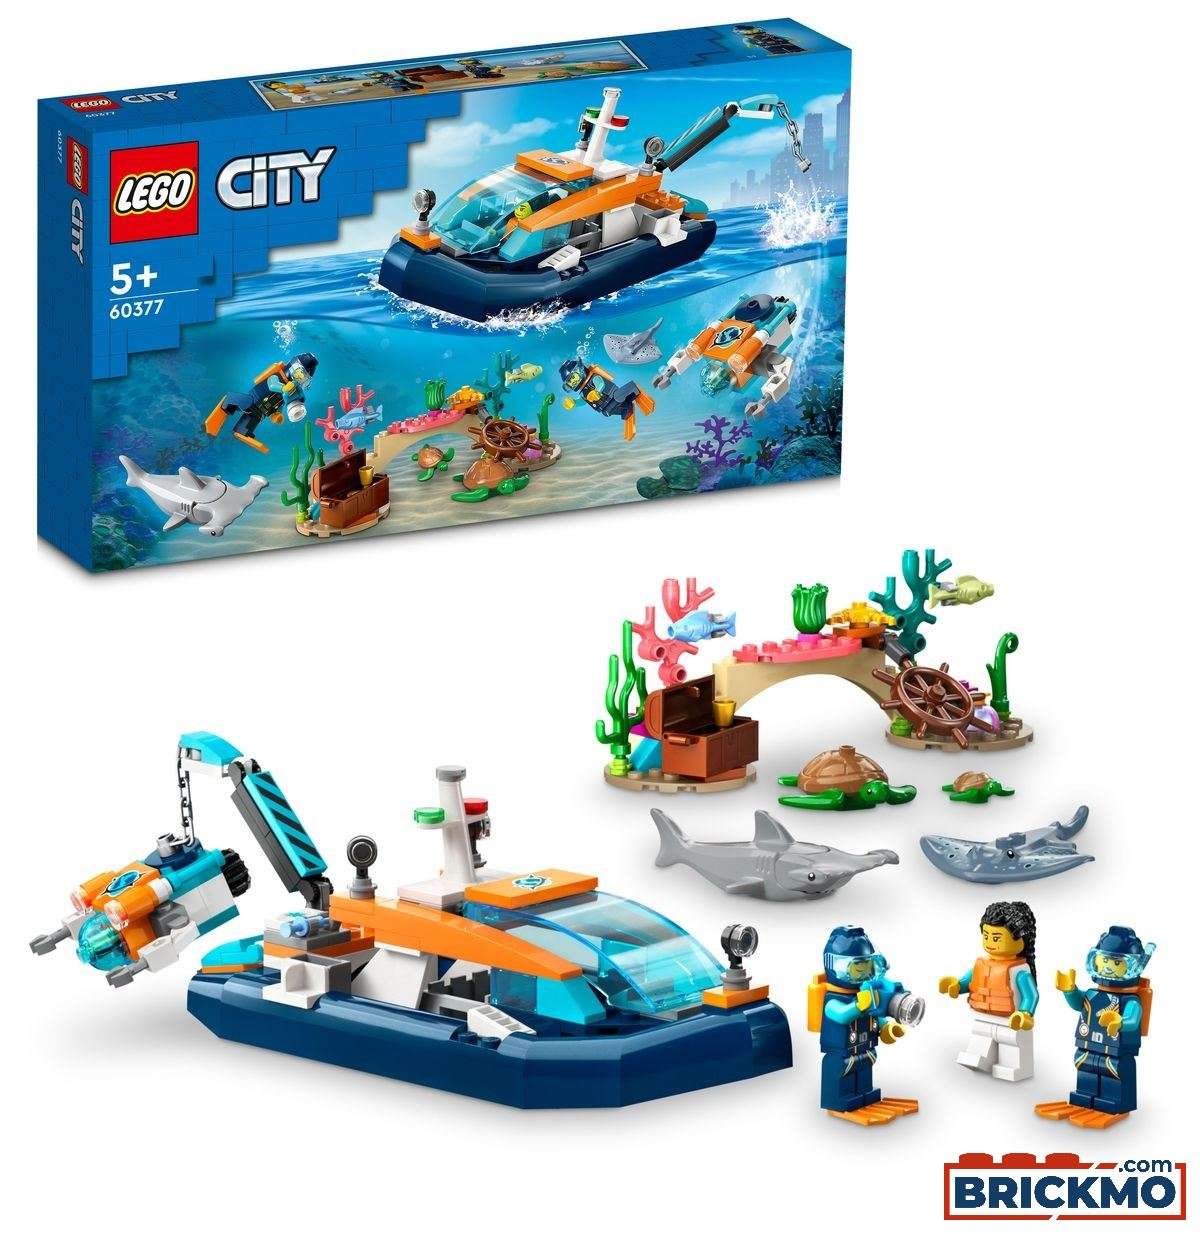 LEGO City 60377 Barco de Exploración Submarina 60377